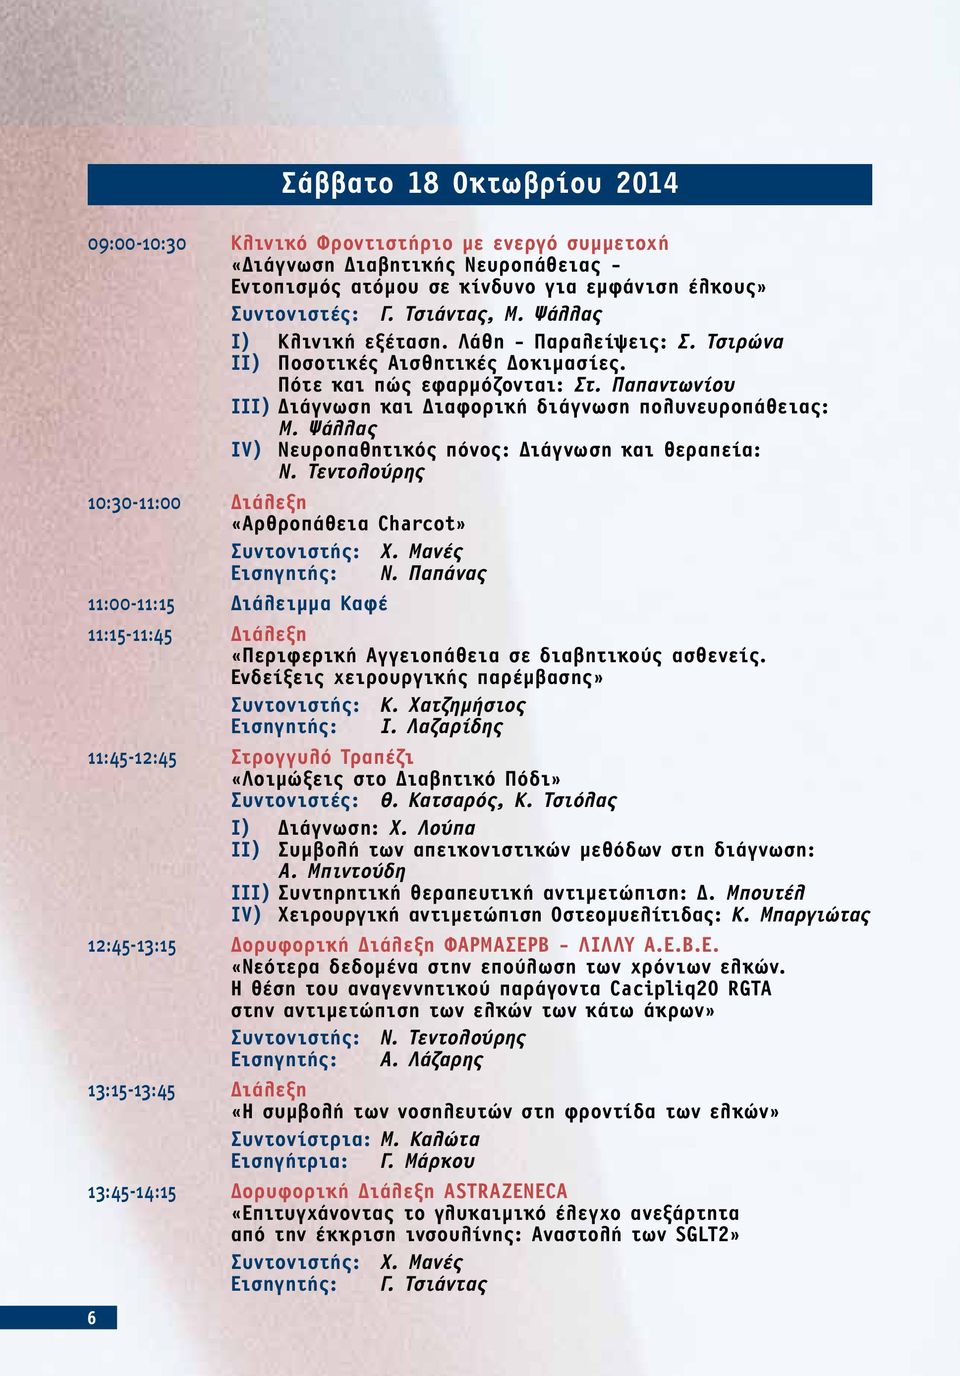 Ψάλλας IV) Νευροπαθητικός πόνος: Διάγνωση και θεραπεία: Ν. Τεντολούρης 10:30-11:00 Διάλεξη «Αρθροπάθεια Charcot» Εισηγητής: Ν.